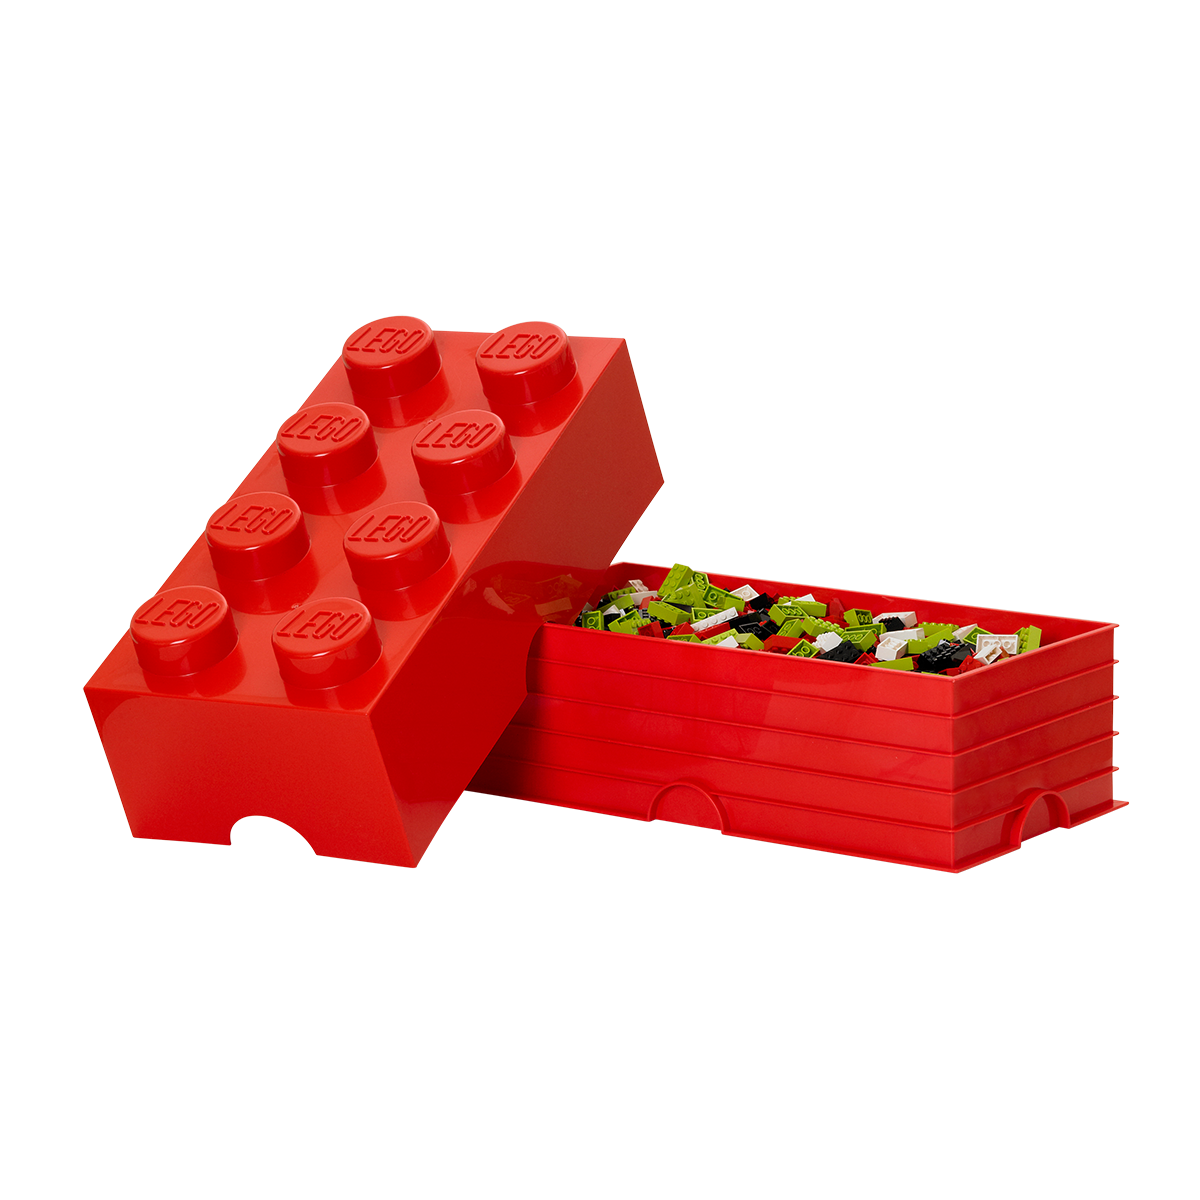 (DC) Contenedor Lego Brick 8 | Bright Red